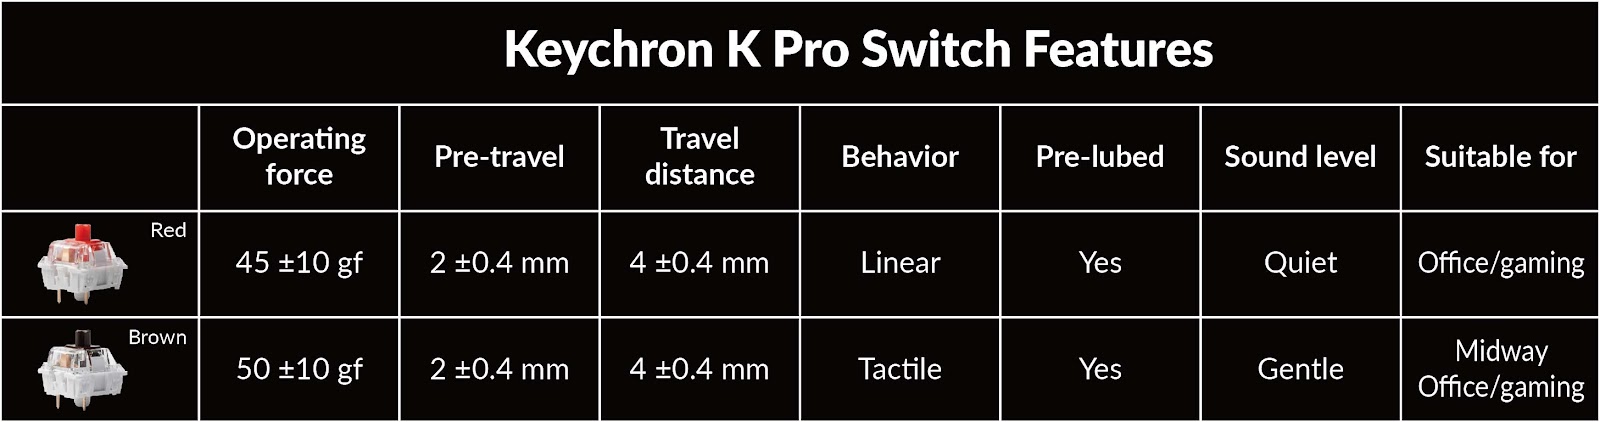 Características del interruptor Keychron K Pro